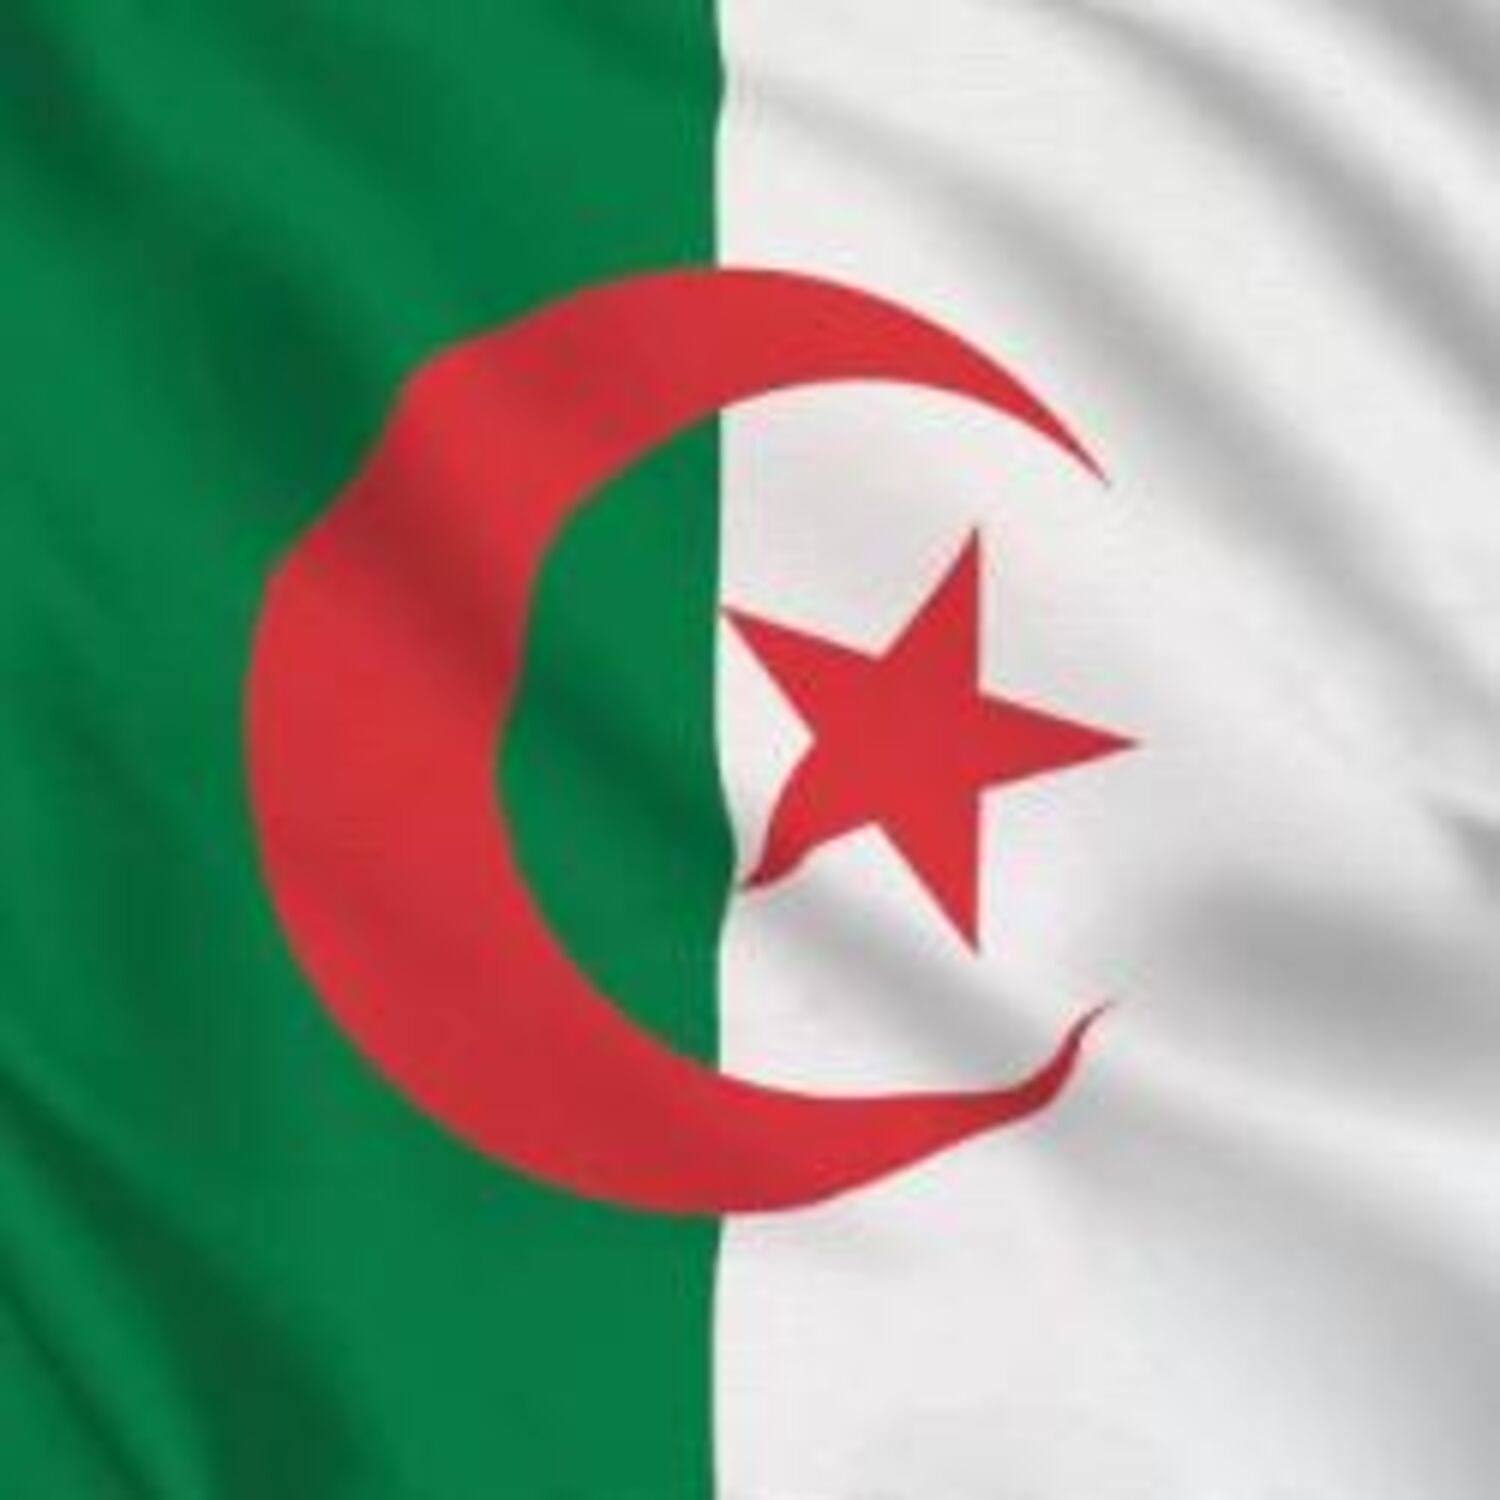 Les Grands Témoins du 06-06-2021 : Spéciale Algérie (algériens de France et législatives algériennes